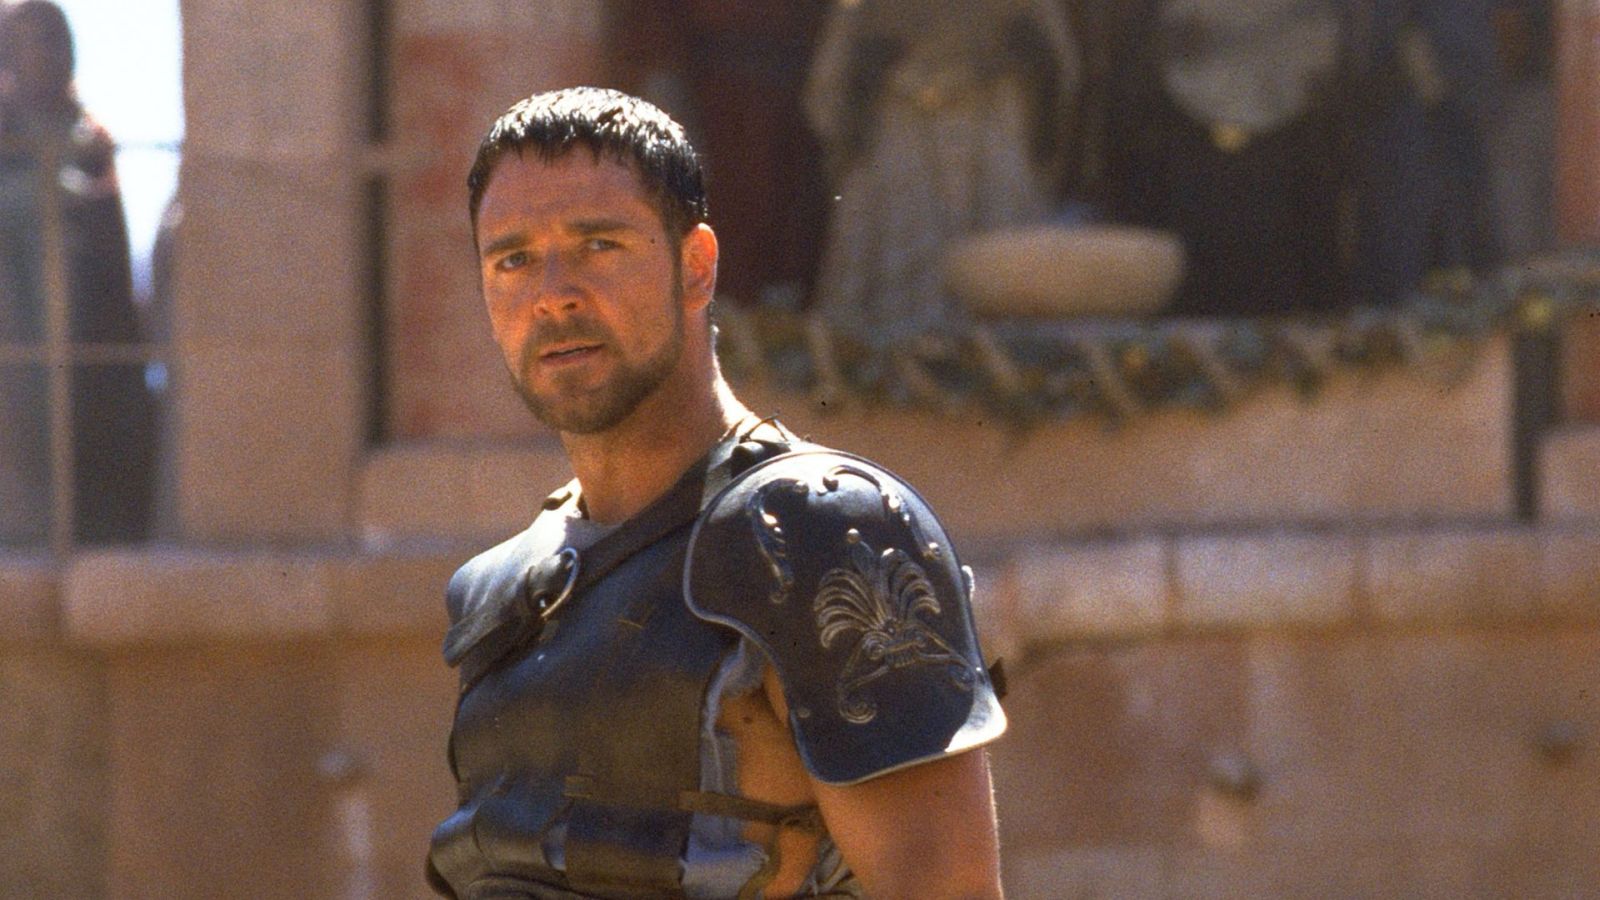 Il Gladiatore 2, Russell Crowe parla del sequel stracciato: 'Il mio personaggio sarebbe stato nel Limbo'